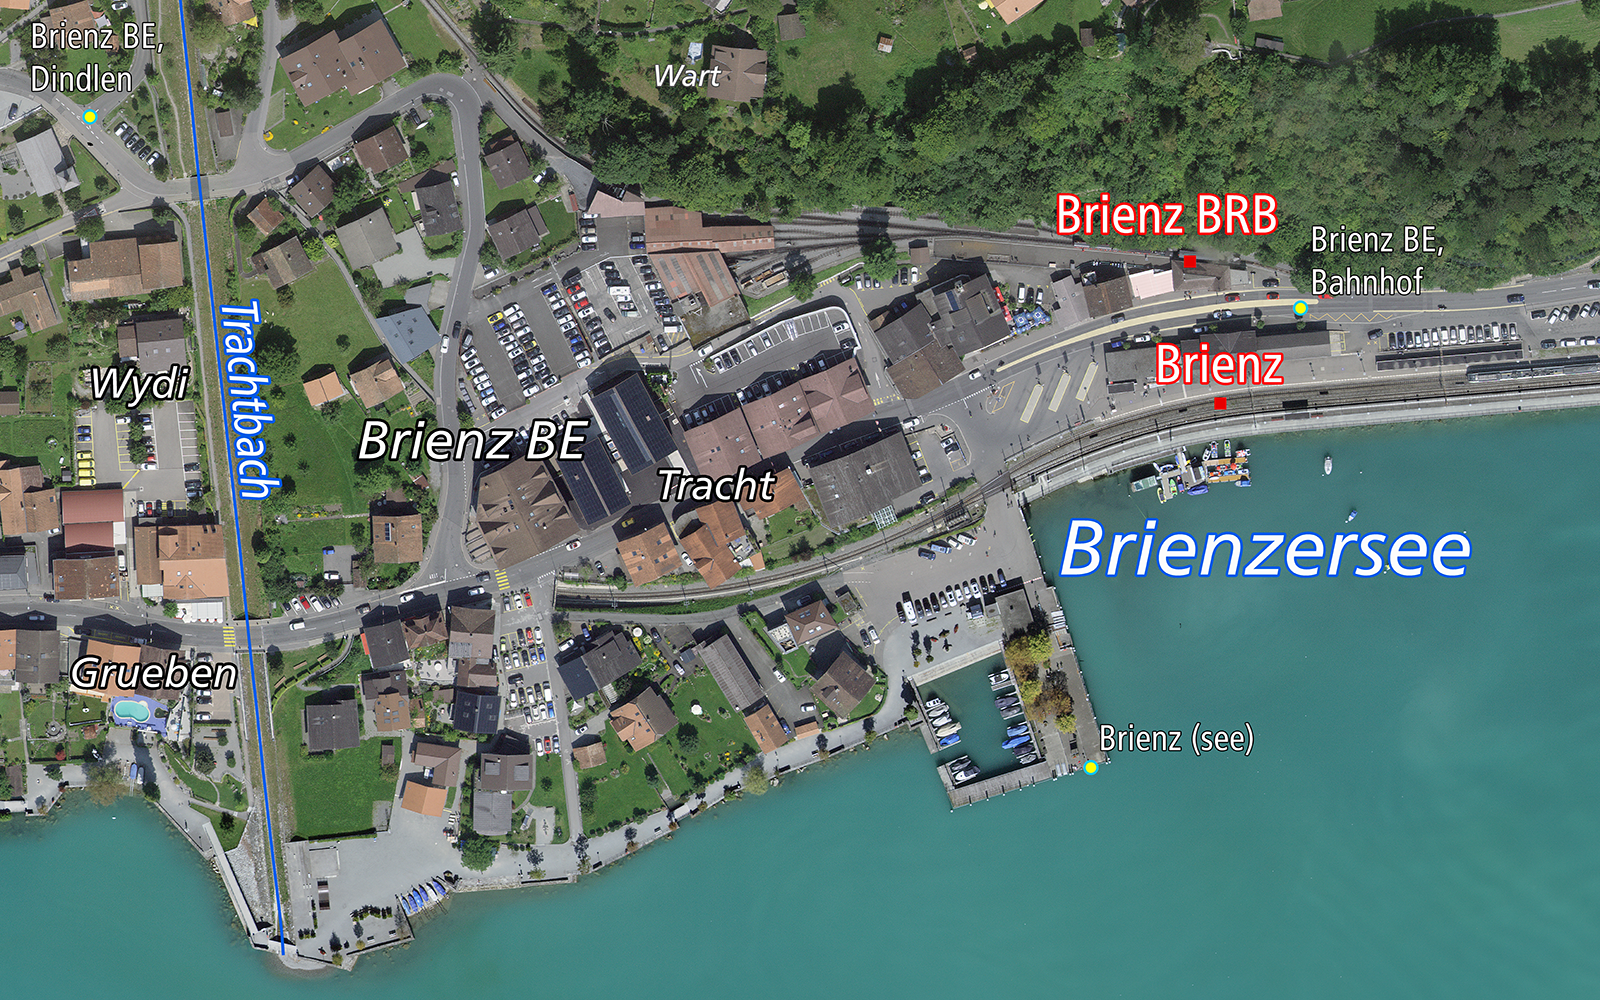 L'image montre une vue aérienne de Brienz BE avec le village, la gare et le lac de Brienz. 